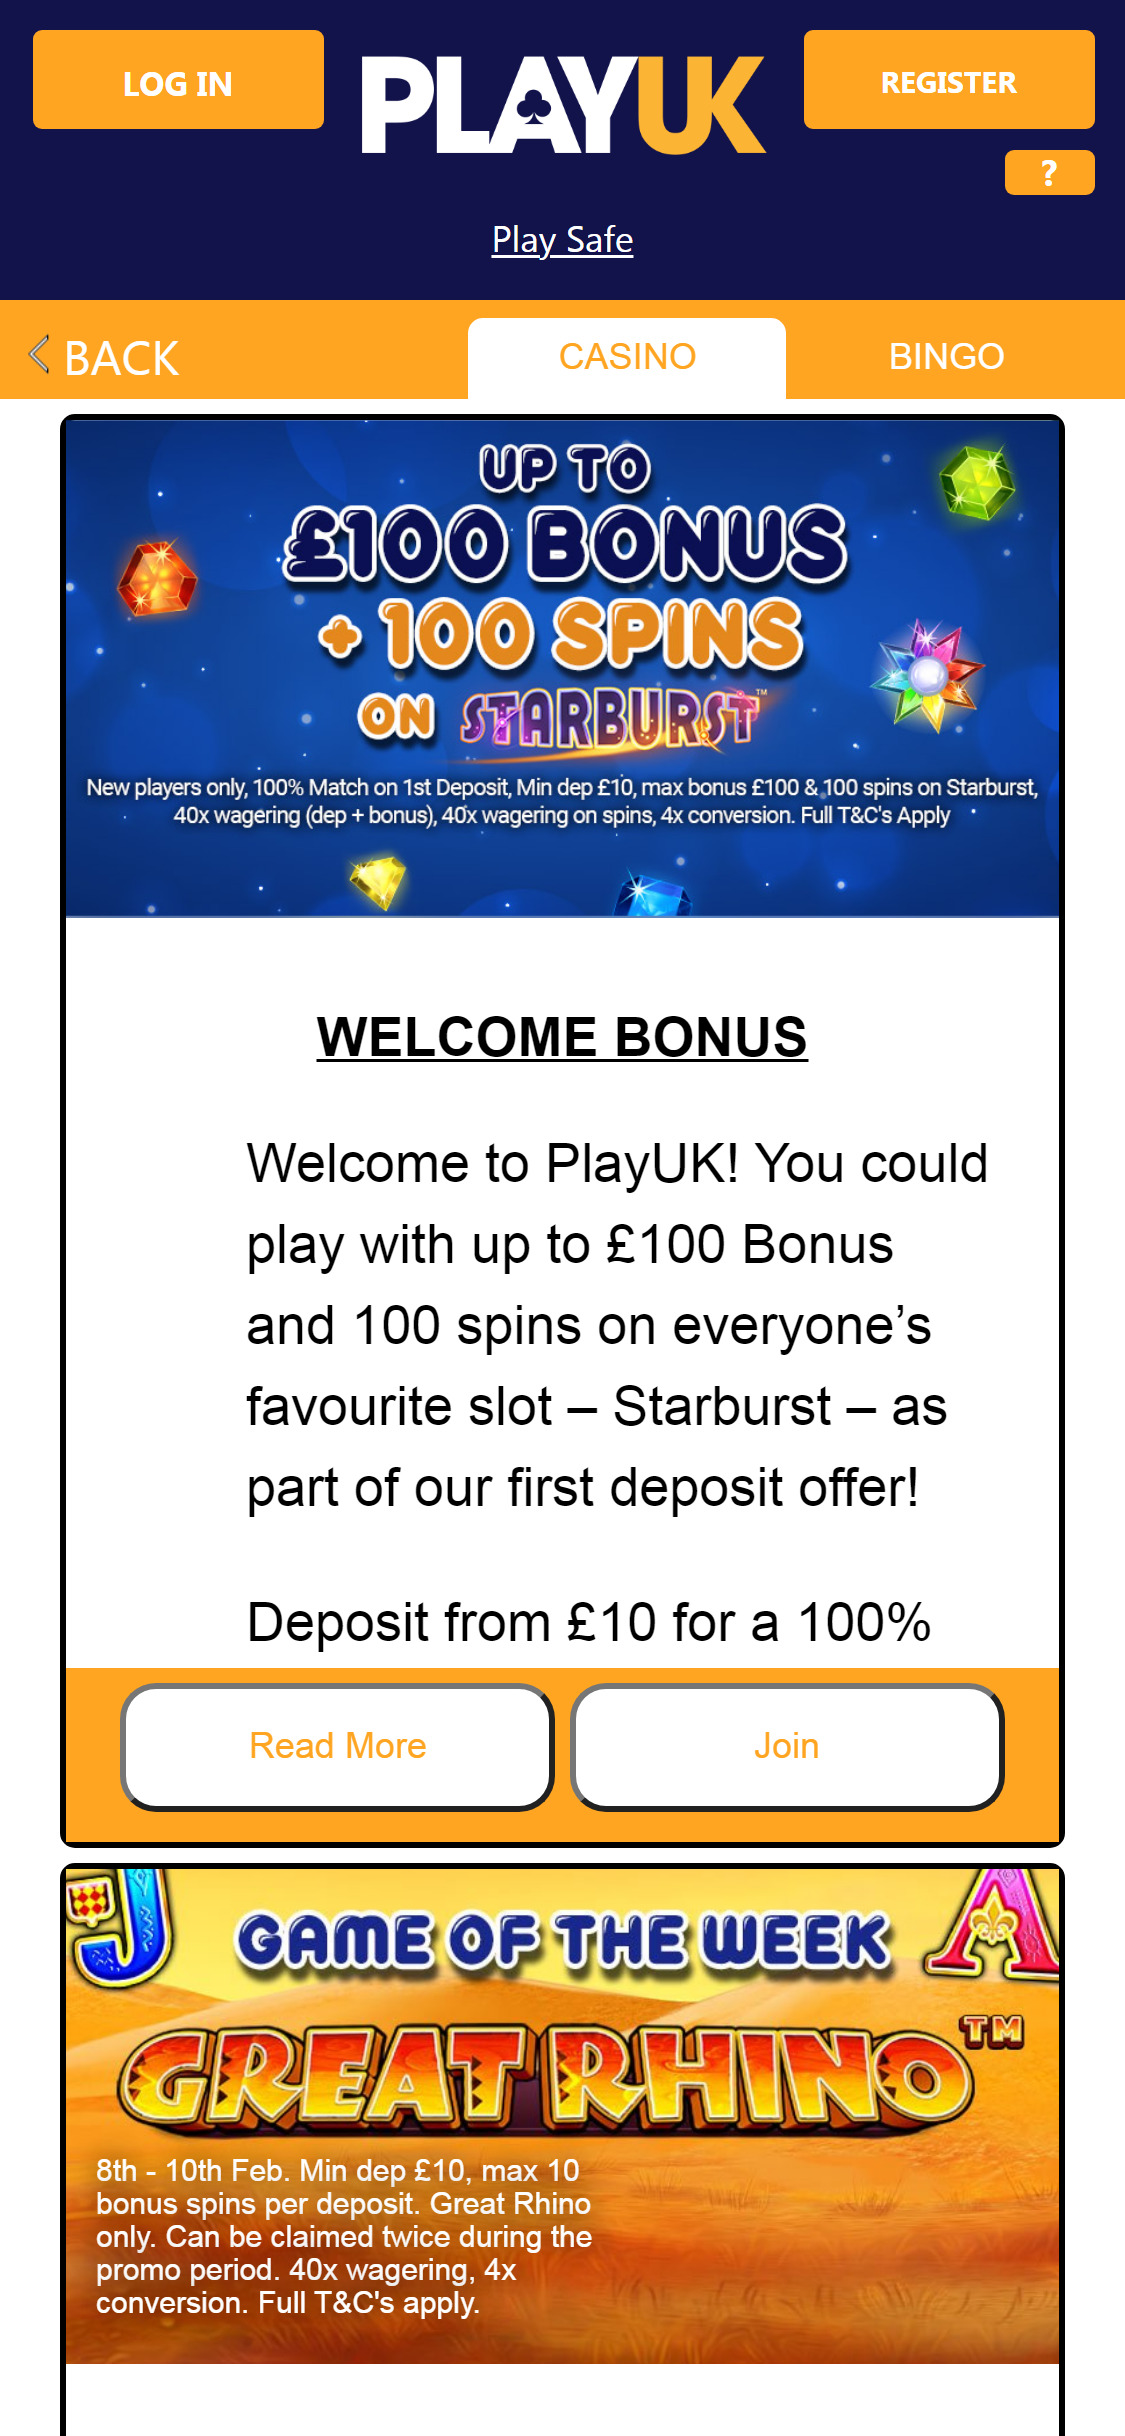 Play UK Casino Mobile No Deposit Bonus Review